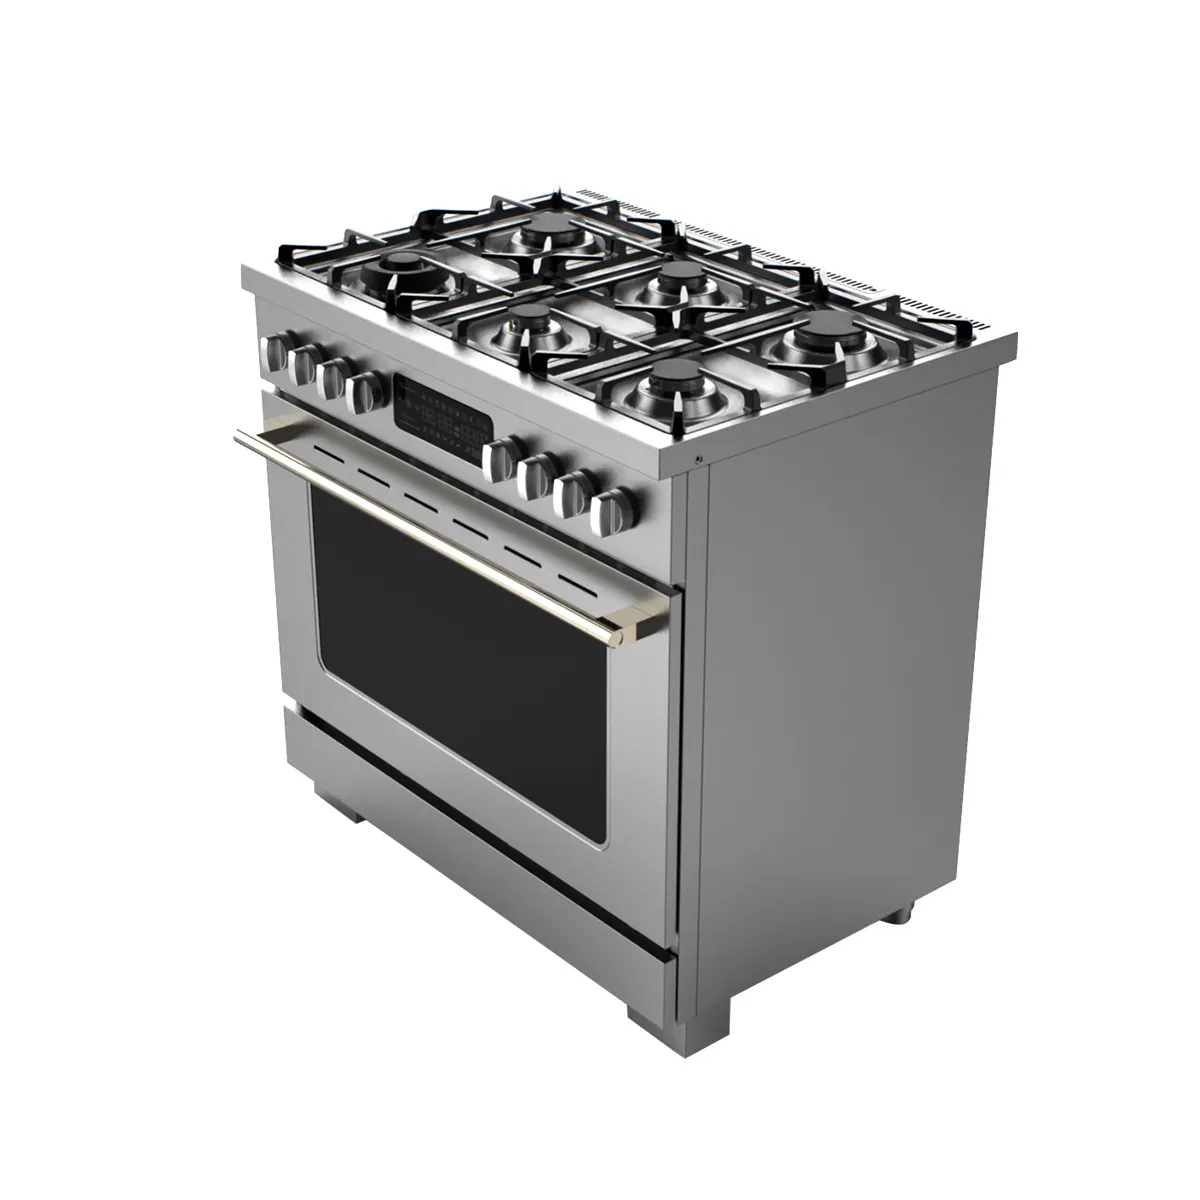 Hyxion indipendente R & D forno per pizza in acciaio inox forno a gas forno elettrico